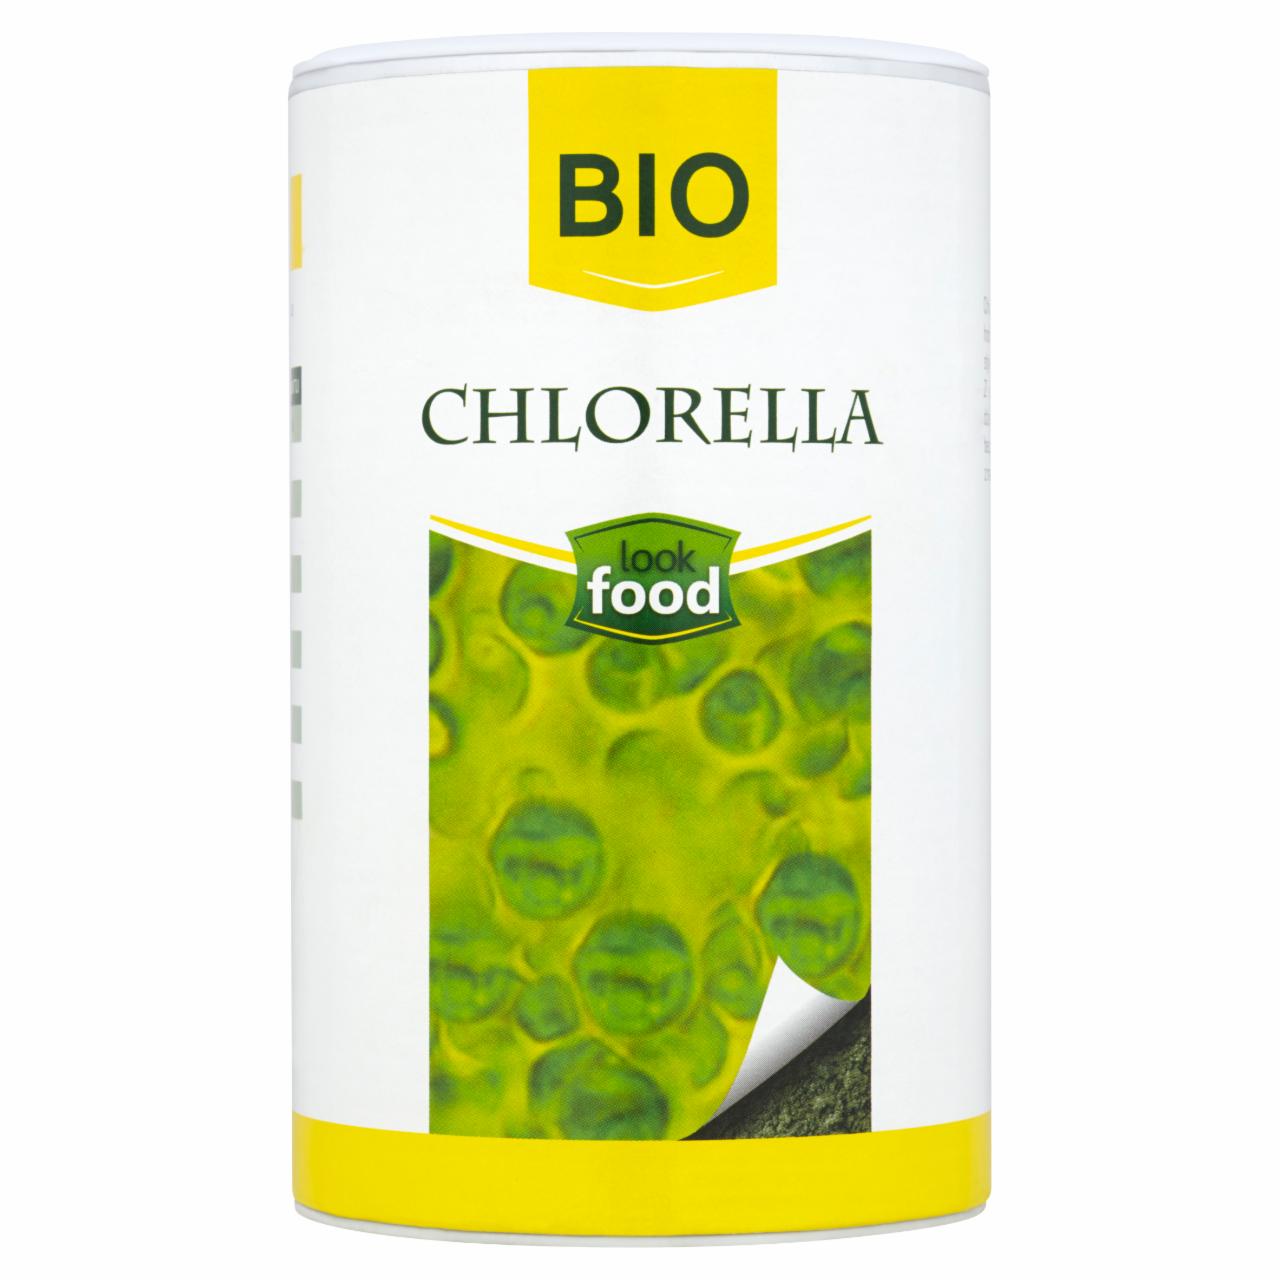 Zdjęcia - Look Food Bio Chlorella 100 g